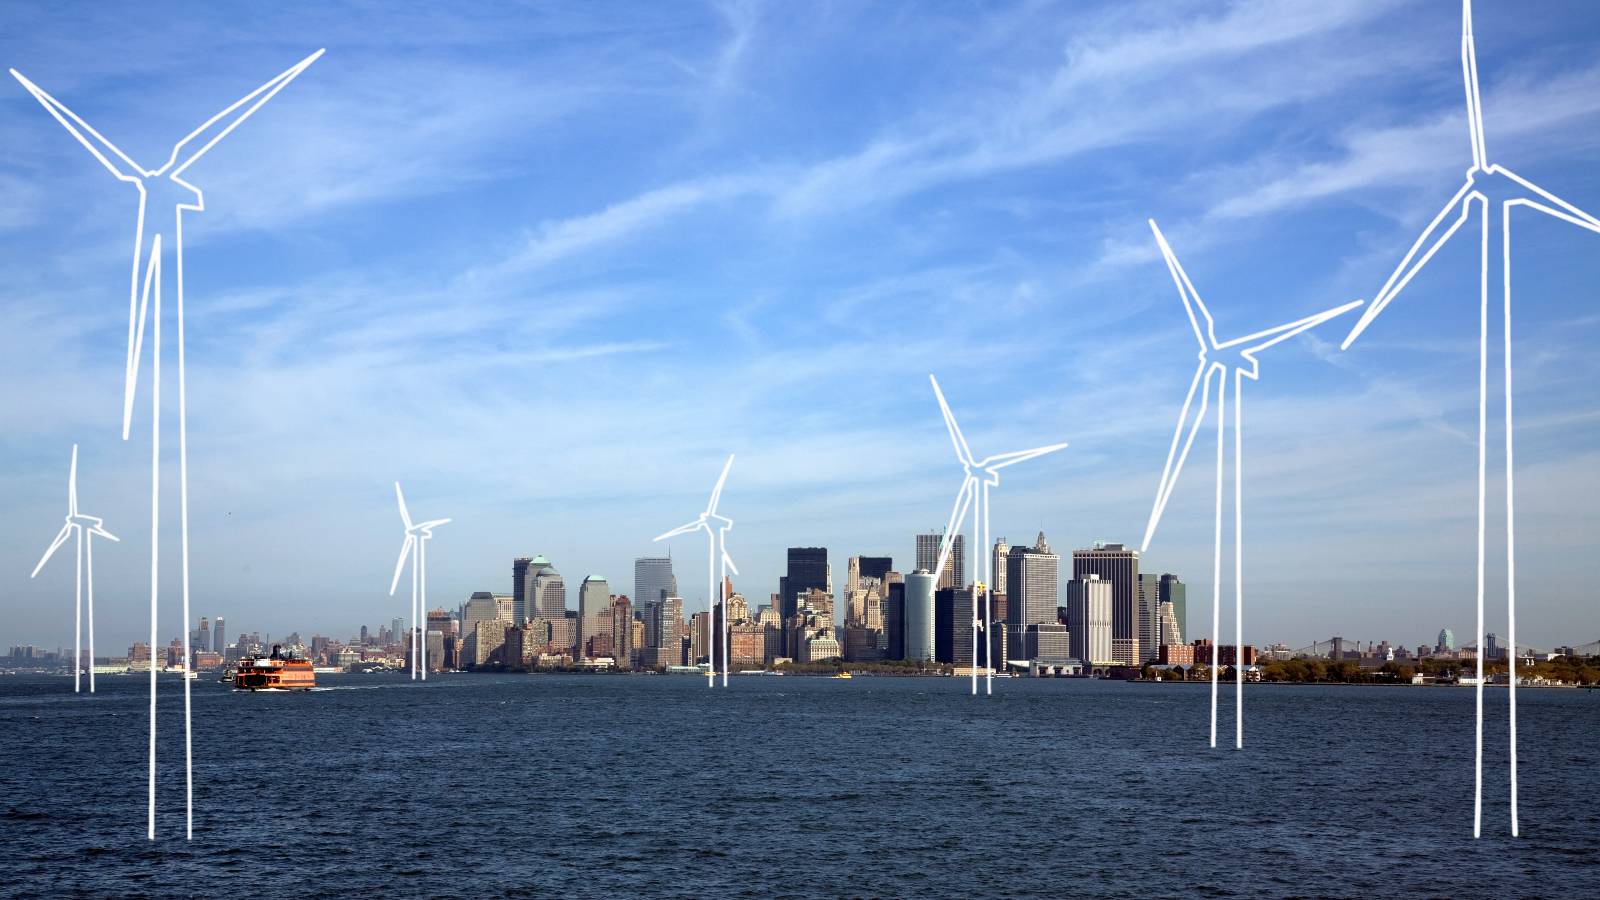 Ilustração do parque eólico offshore no porto de Nova York.